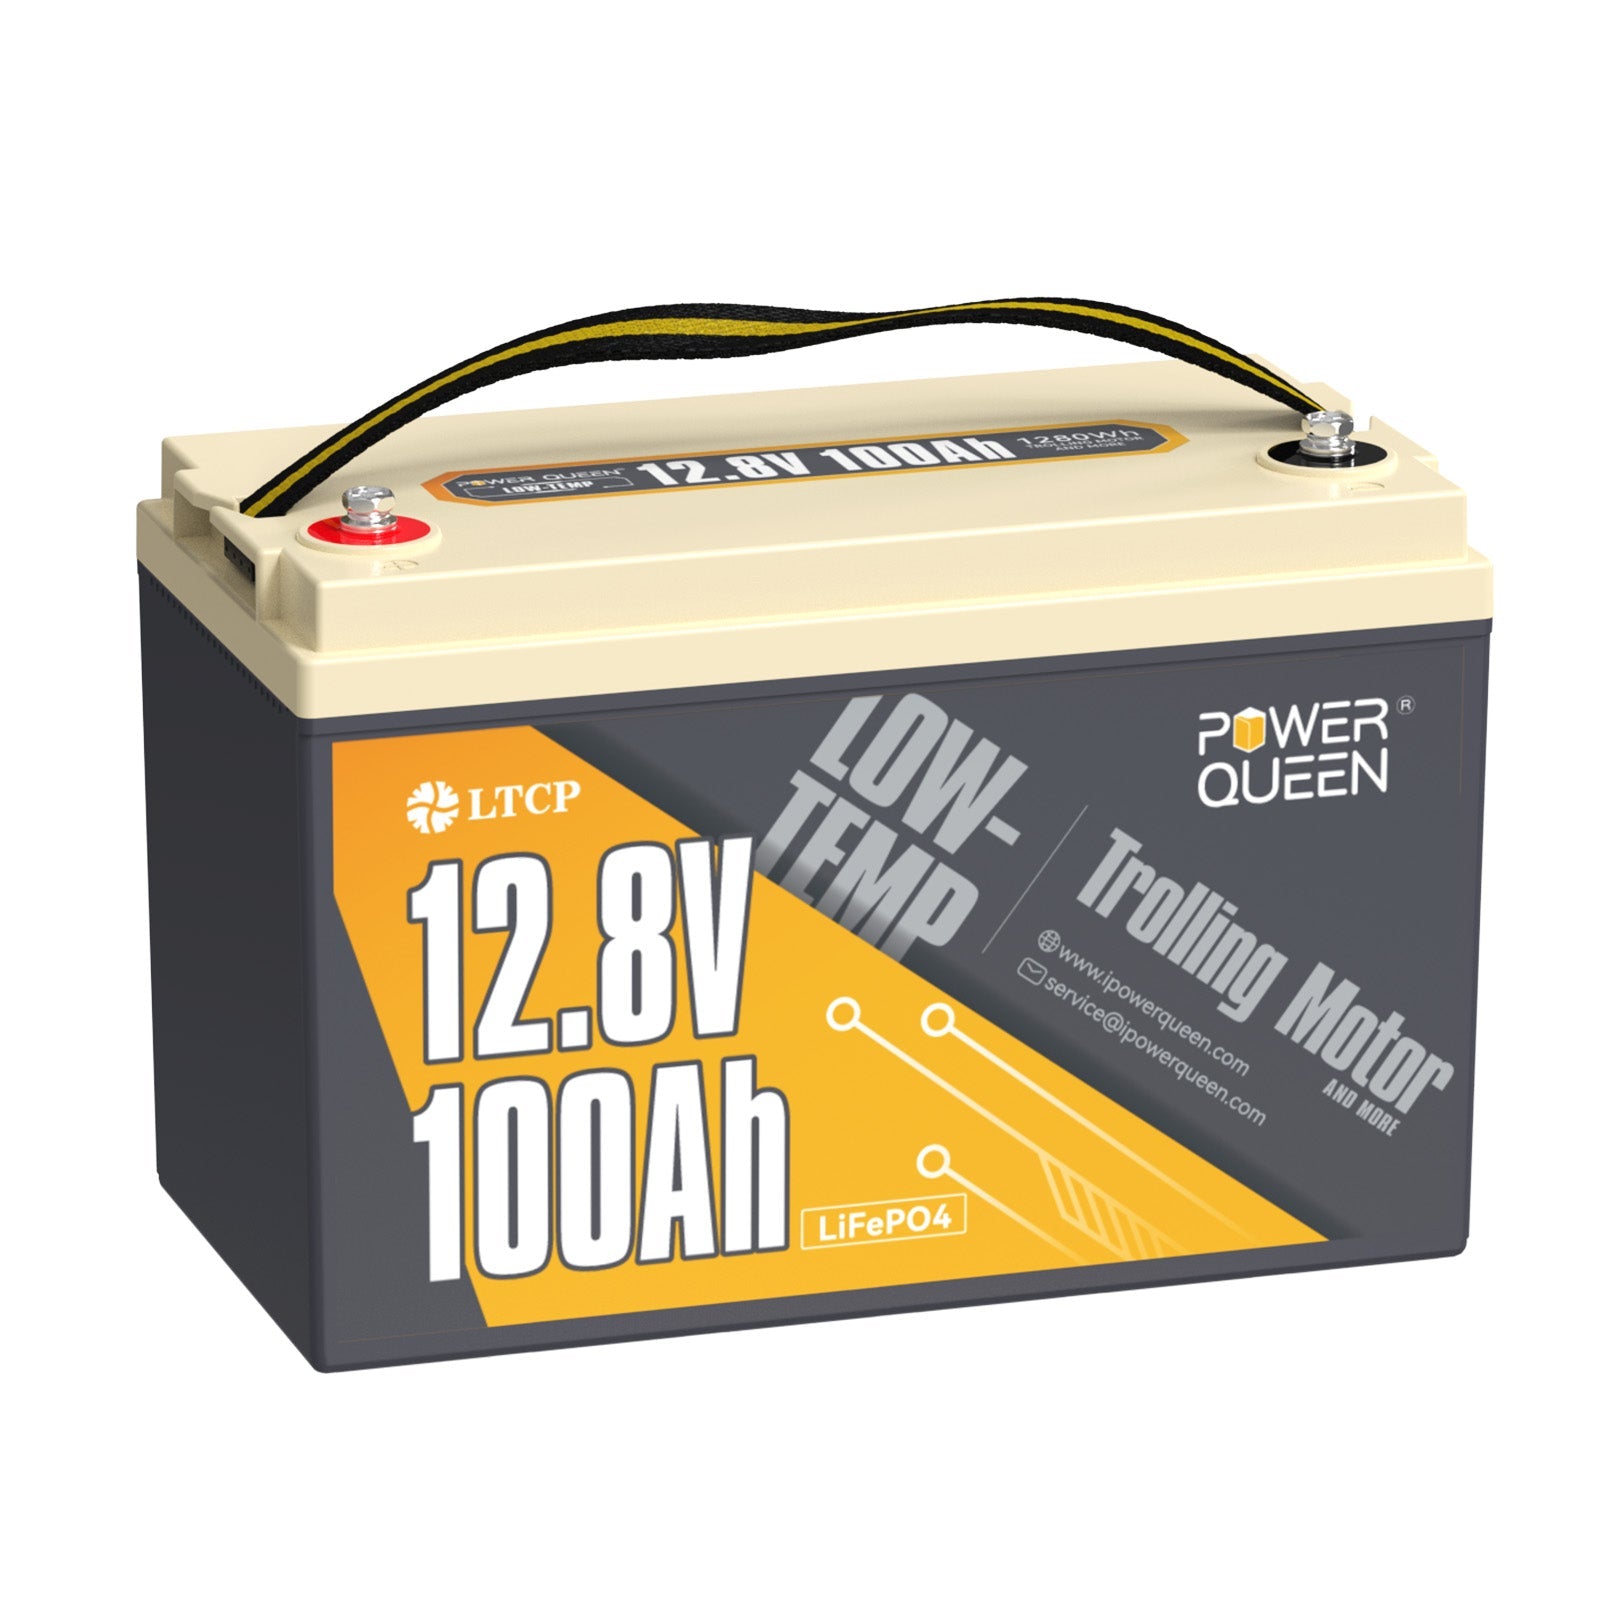 【TVA 0%】 Batterie LiFePO4 basse température Power Queen 12,8 V 100 Ah, BMS 100 A pour moteur de pêche à la traîne